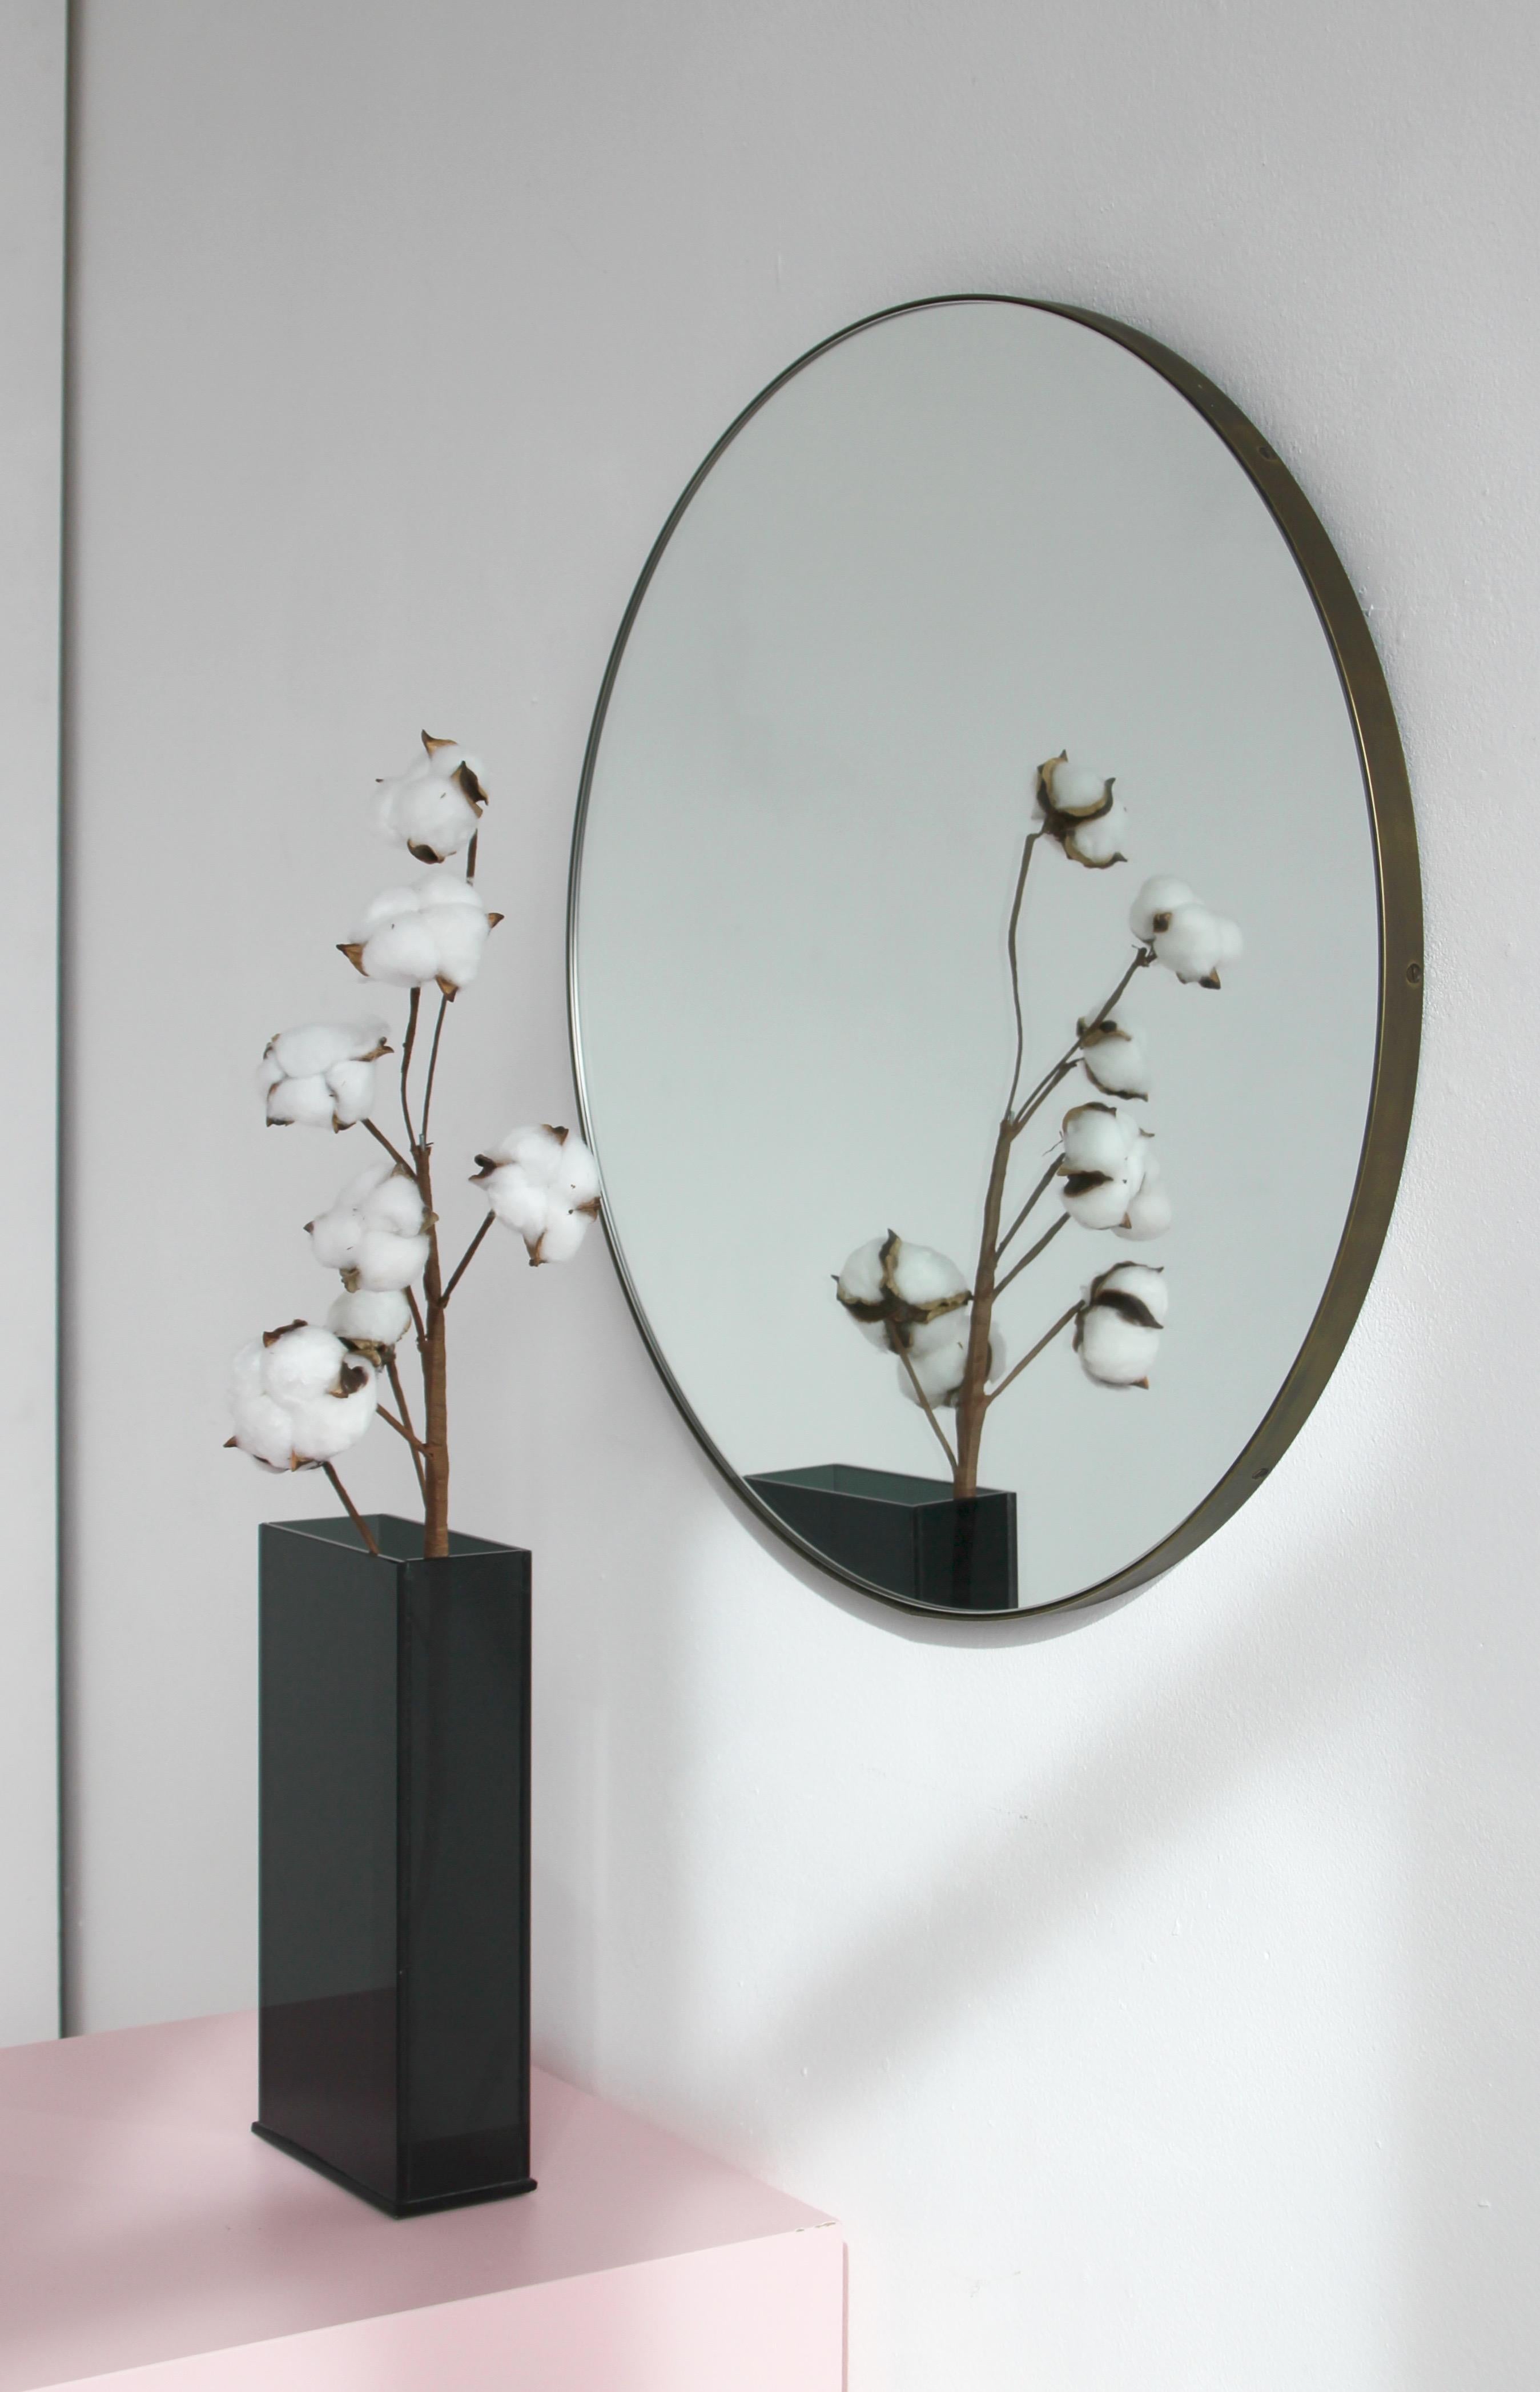 Minimalistischer runder Orbis™-Spiegel mit einem Rahmen aus massivem Messing mit bronzefarbener Patina. Entworfen und handgefertigt in London, UK.

Die Details und die Verarbeitung, einschließlich der sichtbaren Messingschrauben, unterstreichen die